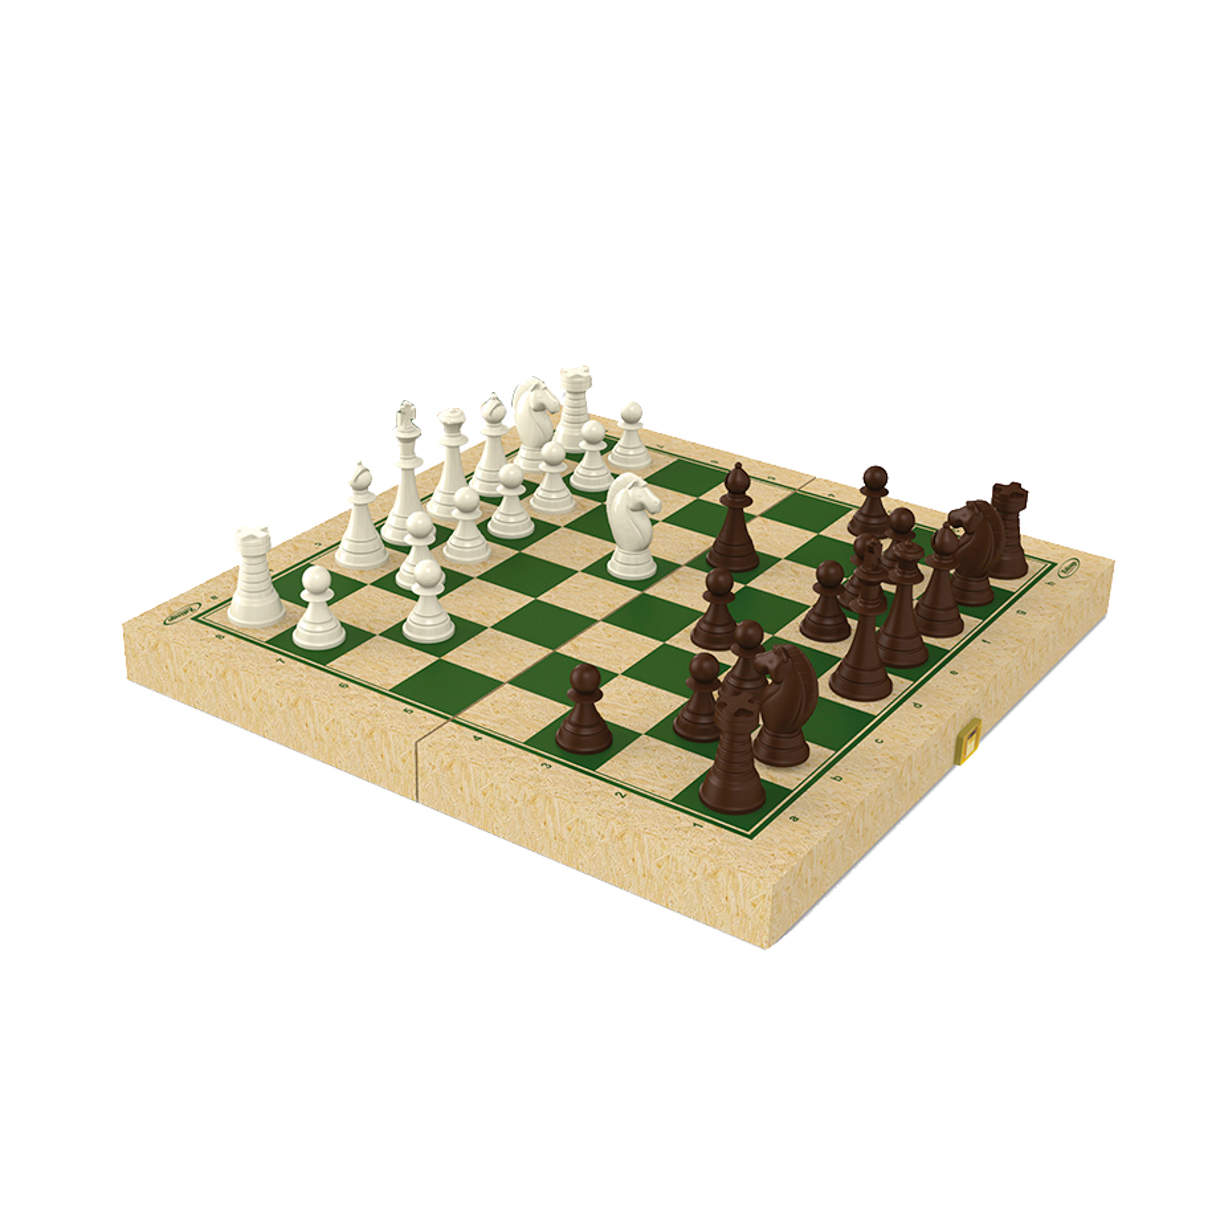 32 peça de madeira peças de xadrez internacionais conjunto sem jogo de  tabuleiro de xadrez engraçado jogo de xadrez coleção portátil